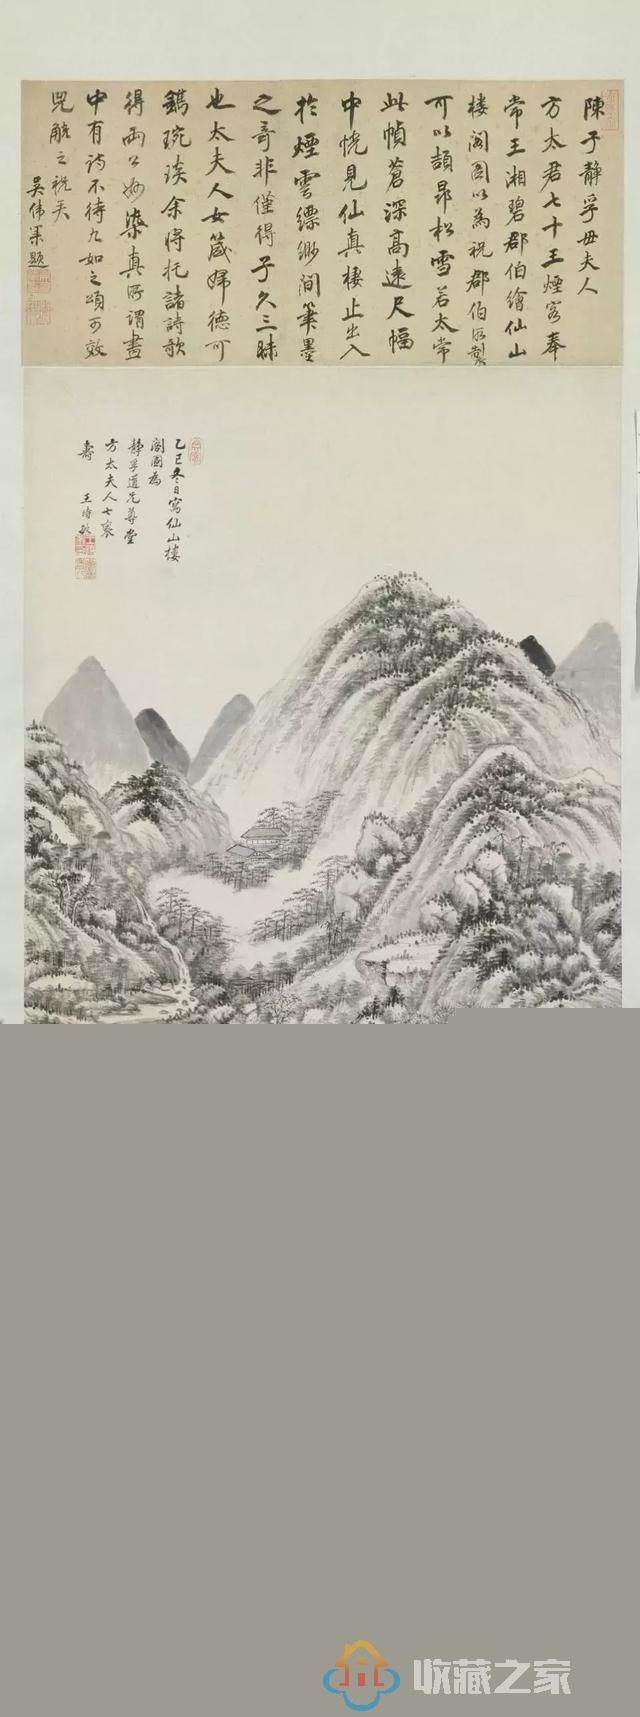 赏画 | 故宫博物院藏 王时敏作品